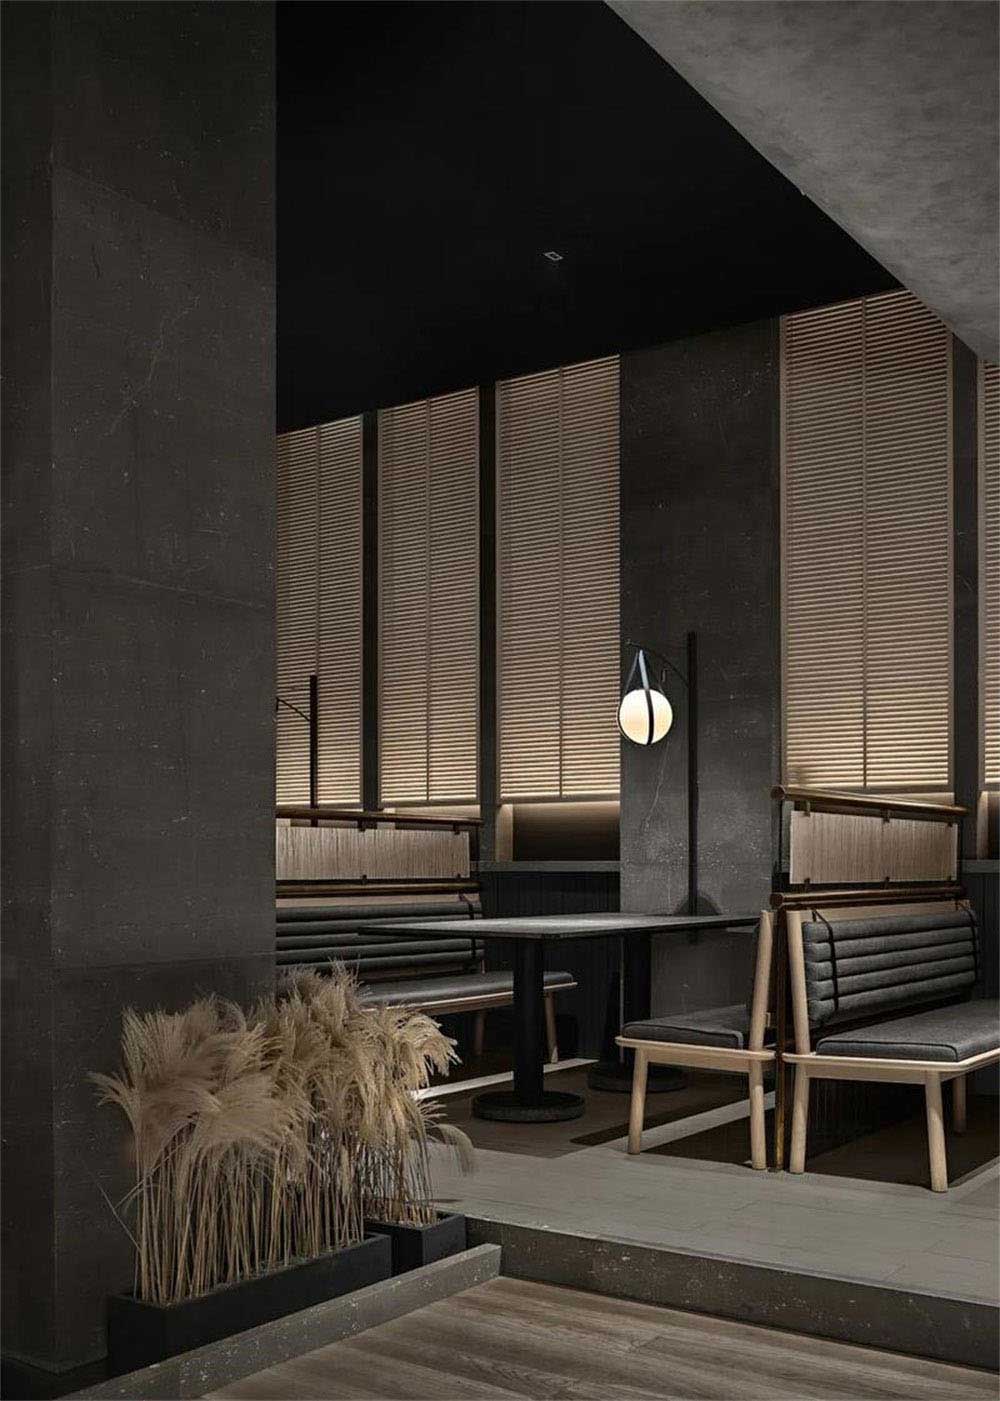 简约风格日本料理铁板烧餐厅装修设计卡座用餐区